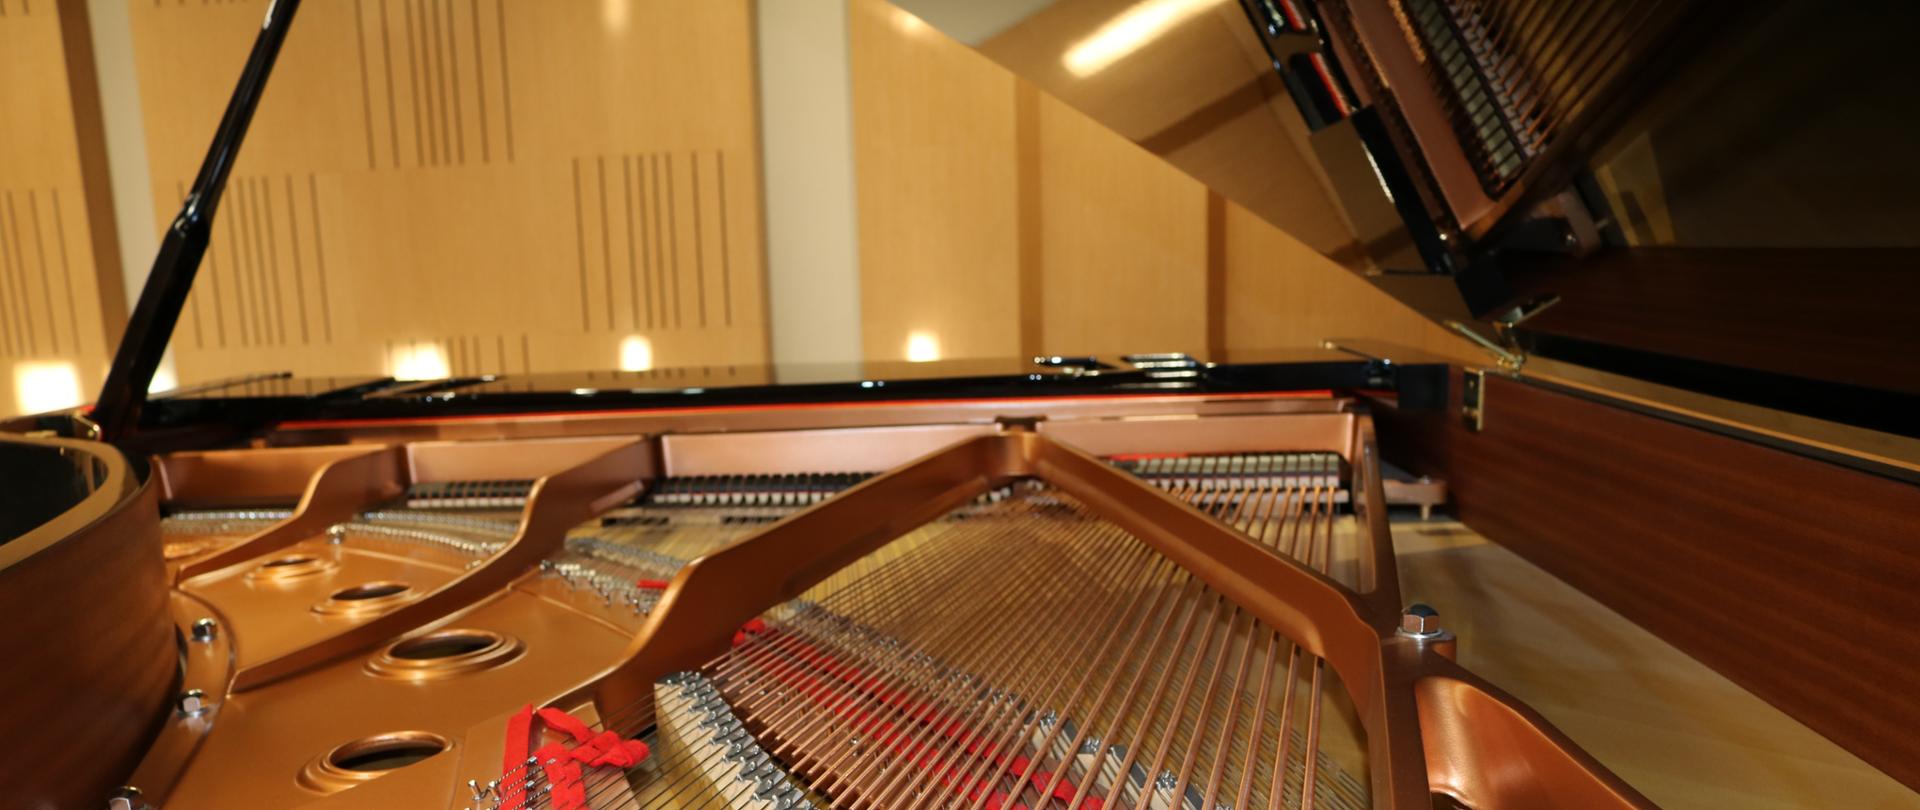 Zdjęcie ukazuje wnętrze fortepianu, ujęcie od tylnej strony.